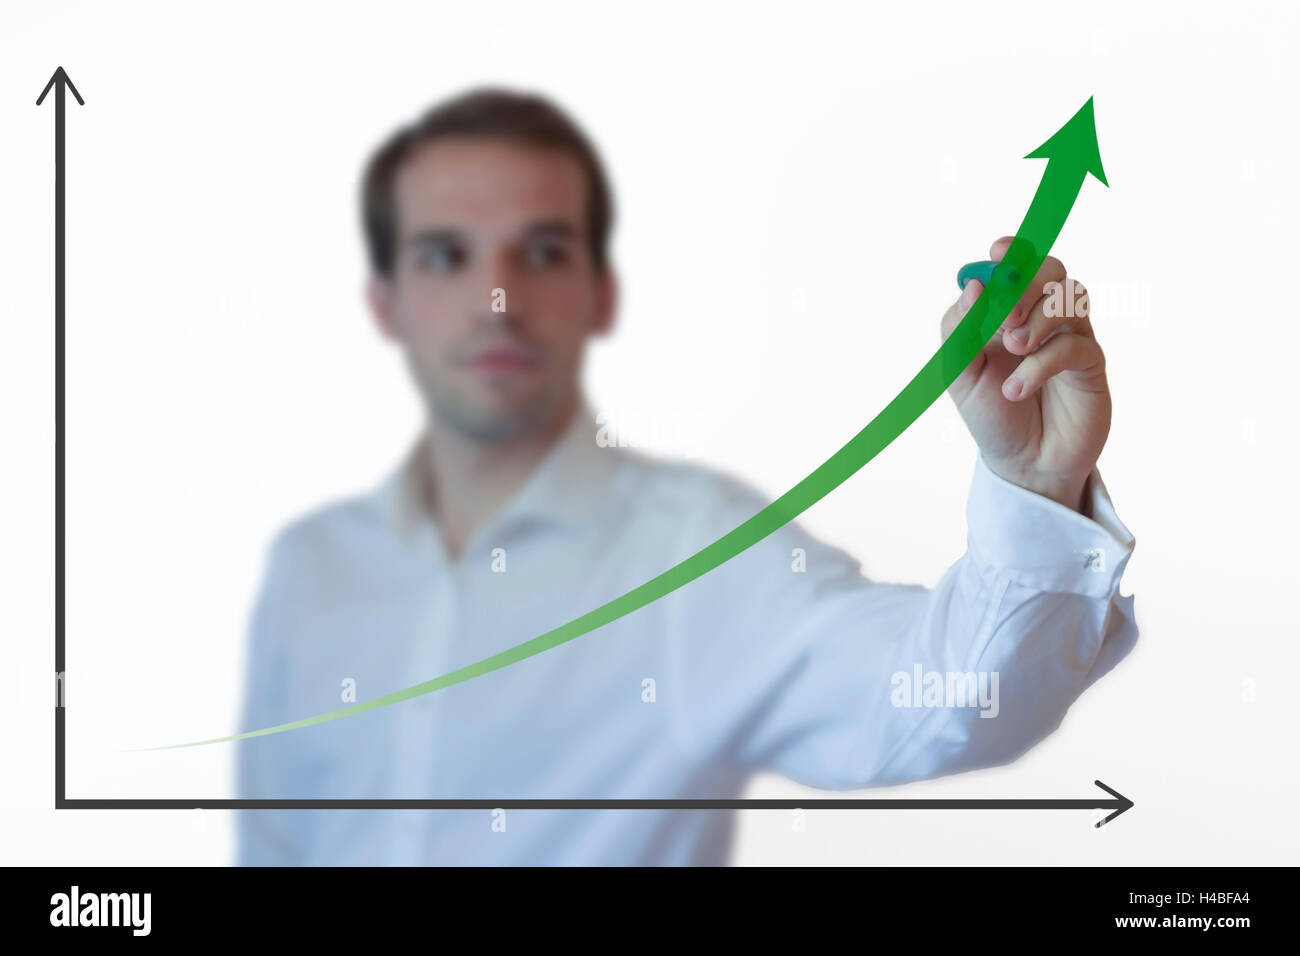 Presentando un empresario exitoso de desarrollo sostenible en un gráfico de barras Foto de stock